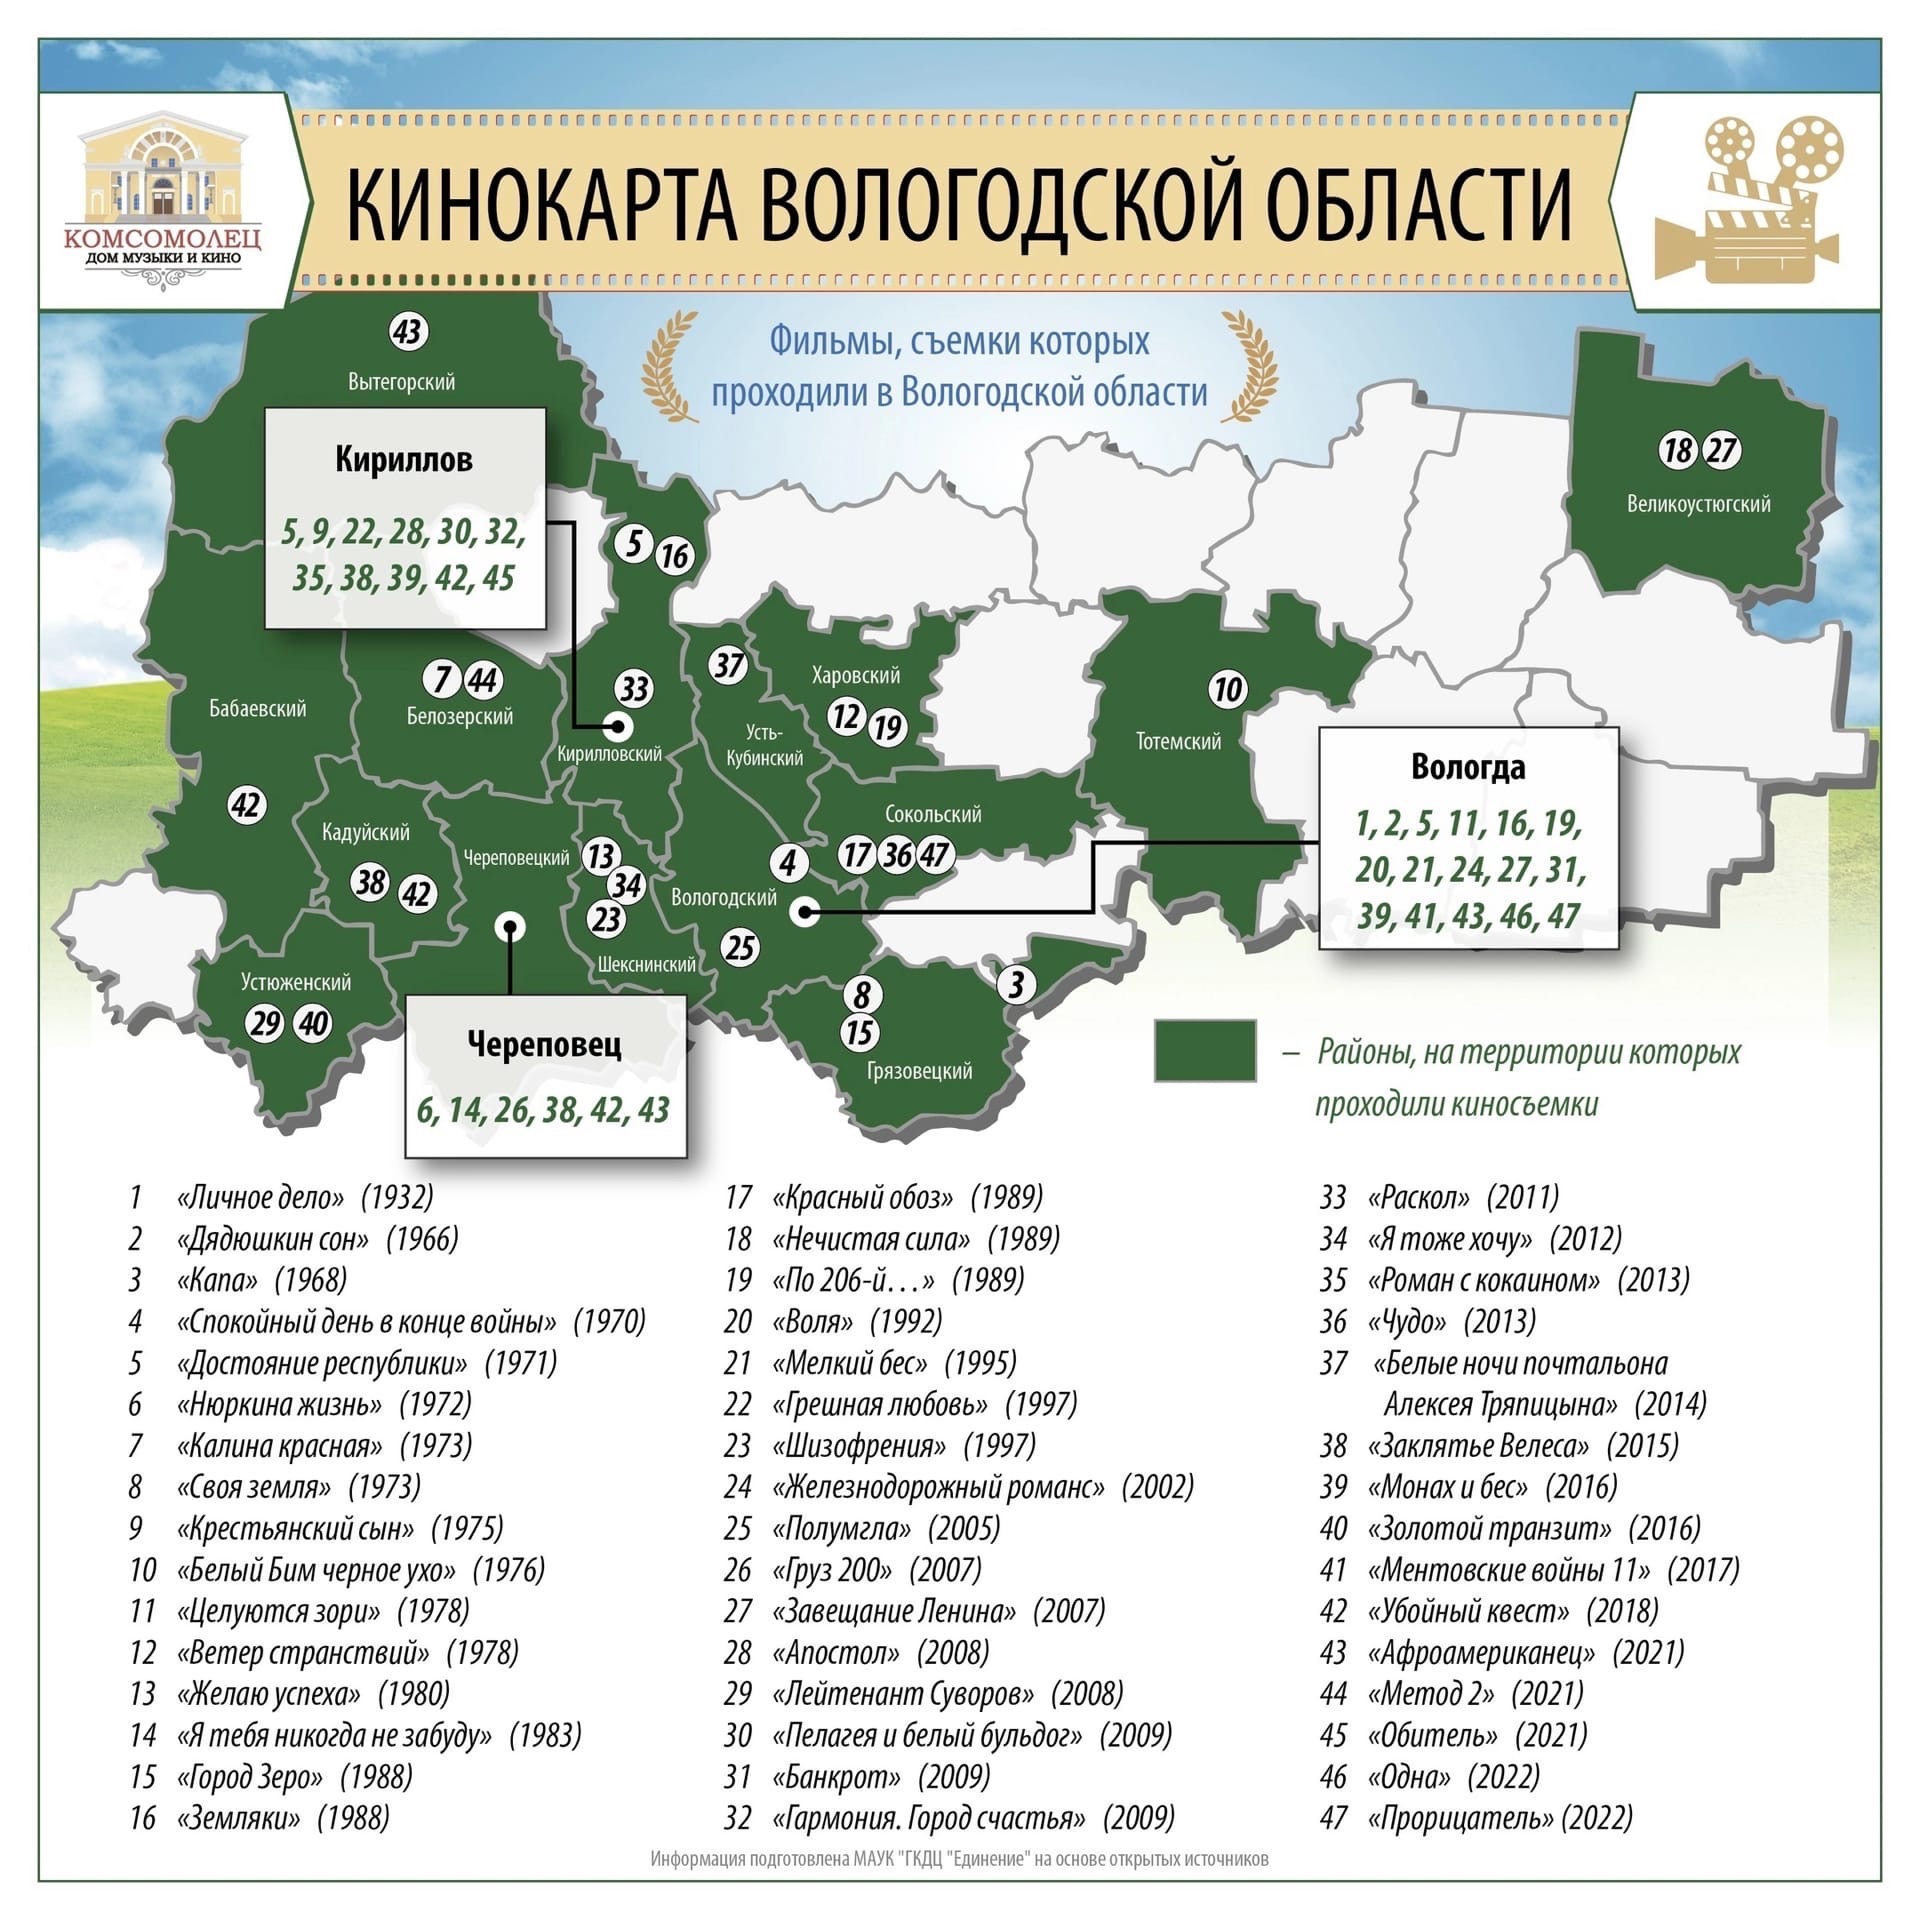 Обновленную кинокарту Вологодской области опубликовал кинотеатр «Комсомолец»